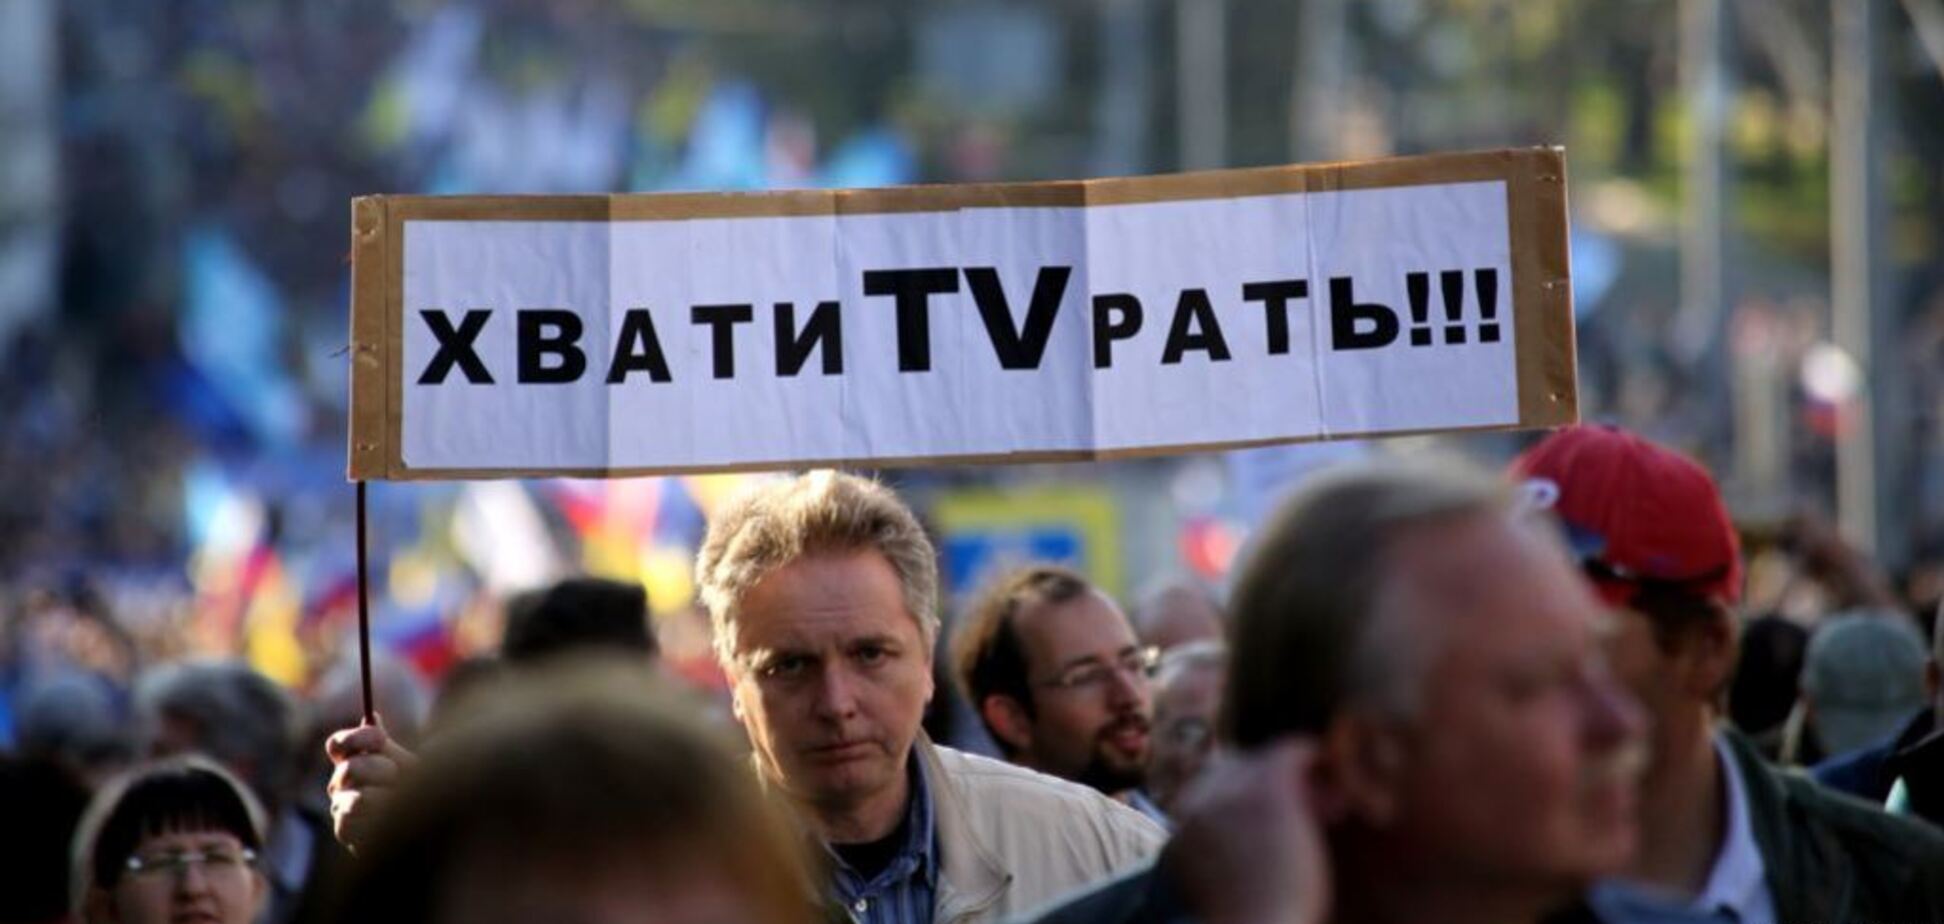 Порєбрік News: українські міста в Росії та ''б*ндерівський заповідник''